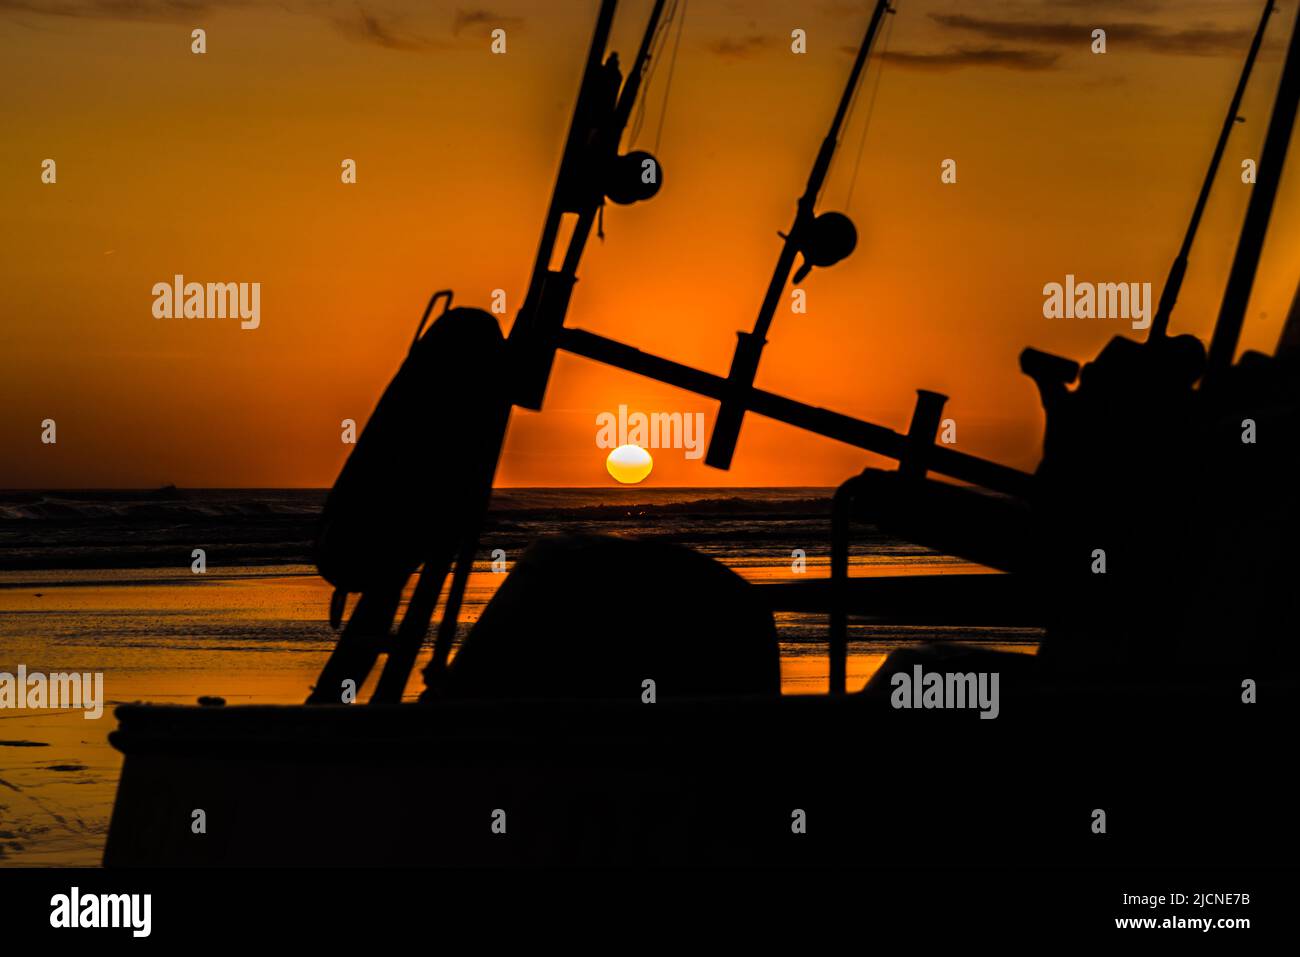 Silhouette d'un bateau de pêche avec cannes à pêche et moulinets avec un coucher de soleil doré. Banque D'Images